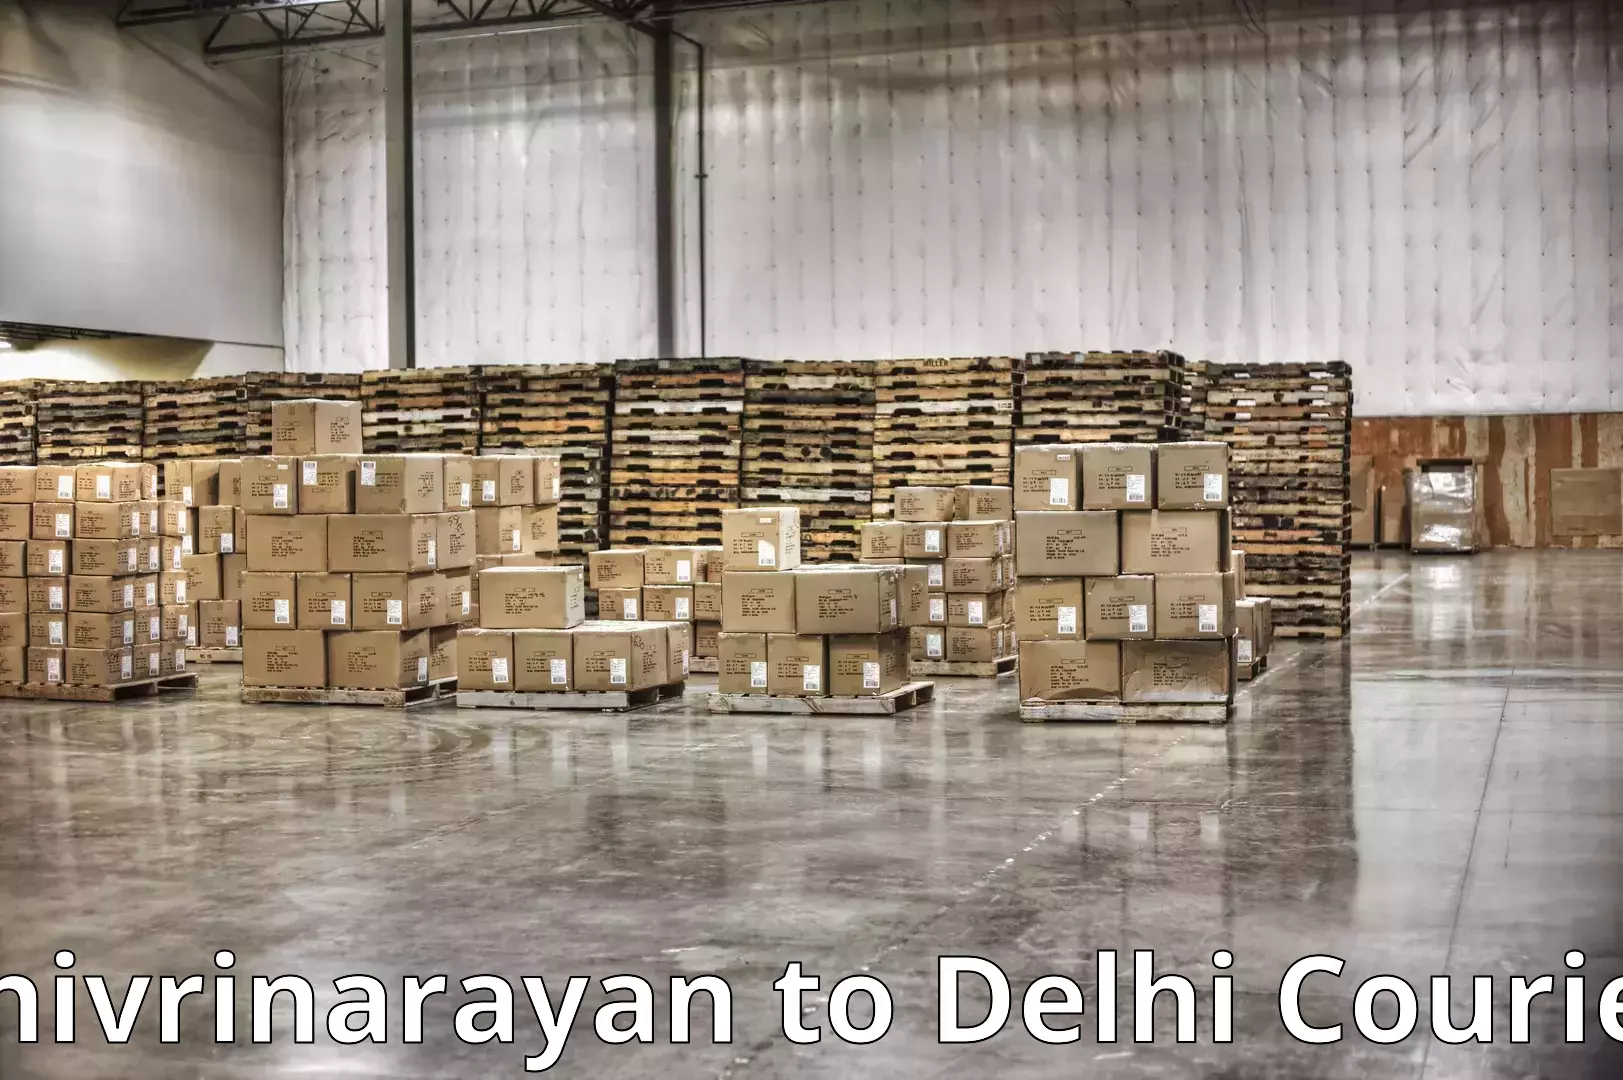 Furniture relocation services in Shivrinarayan to Delhi